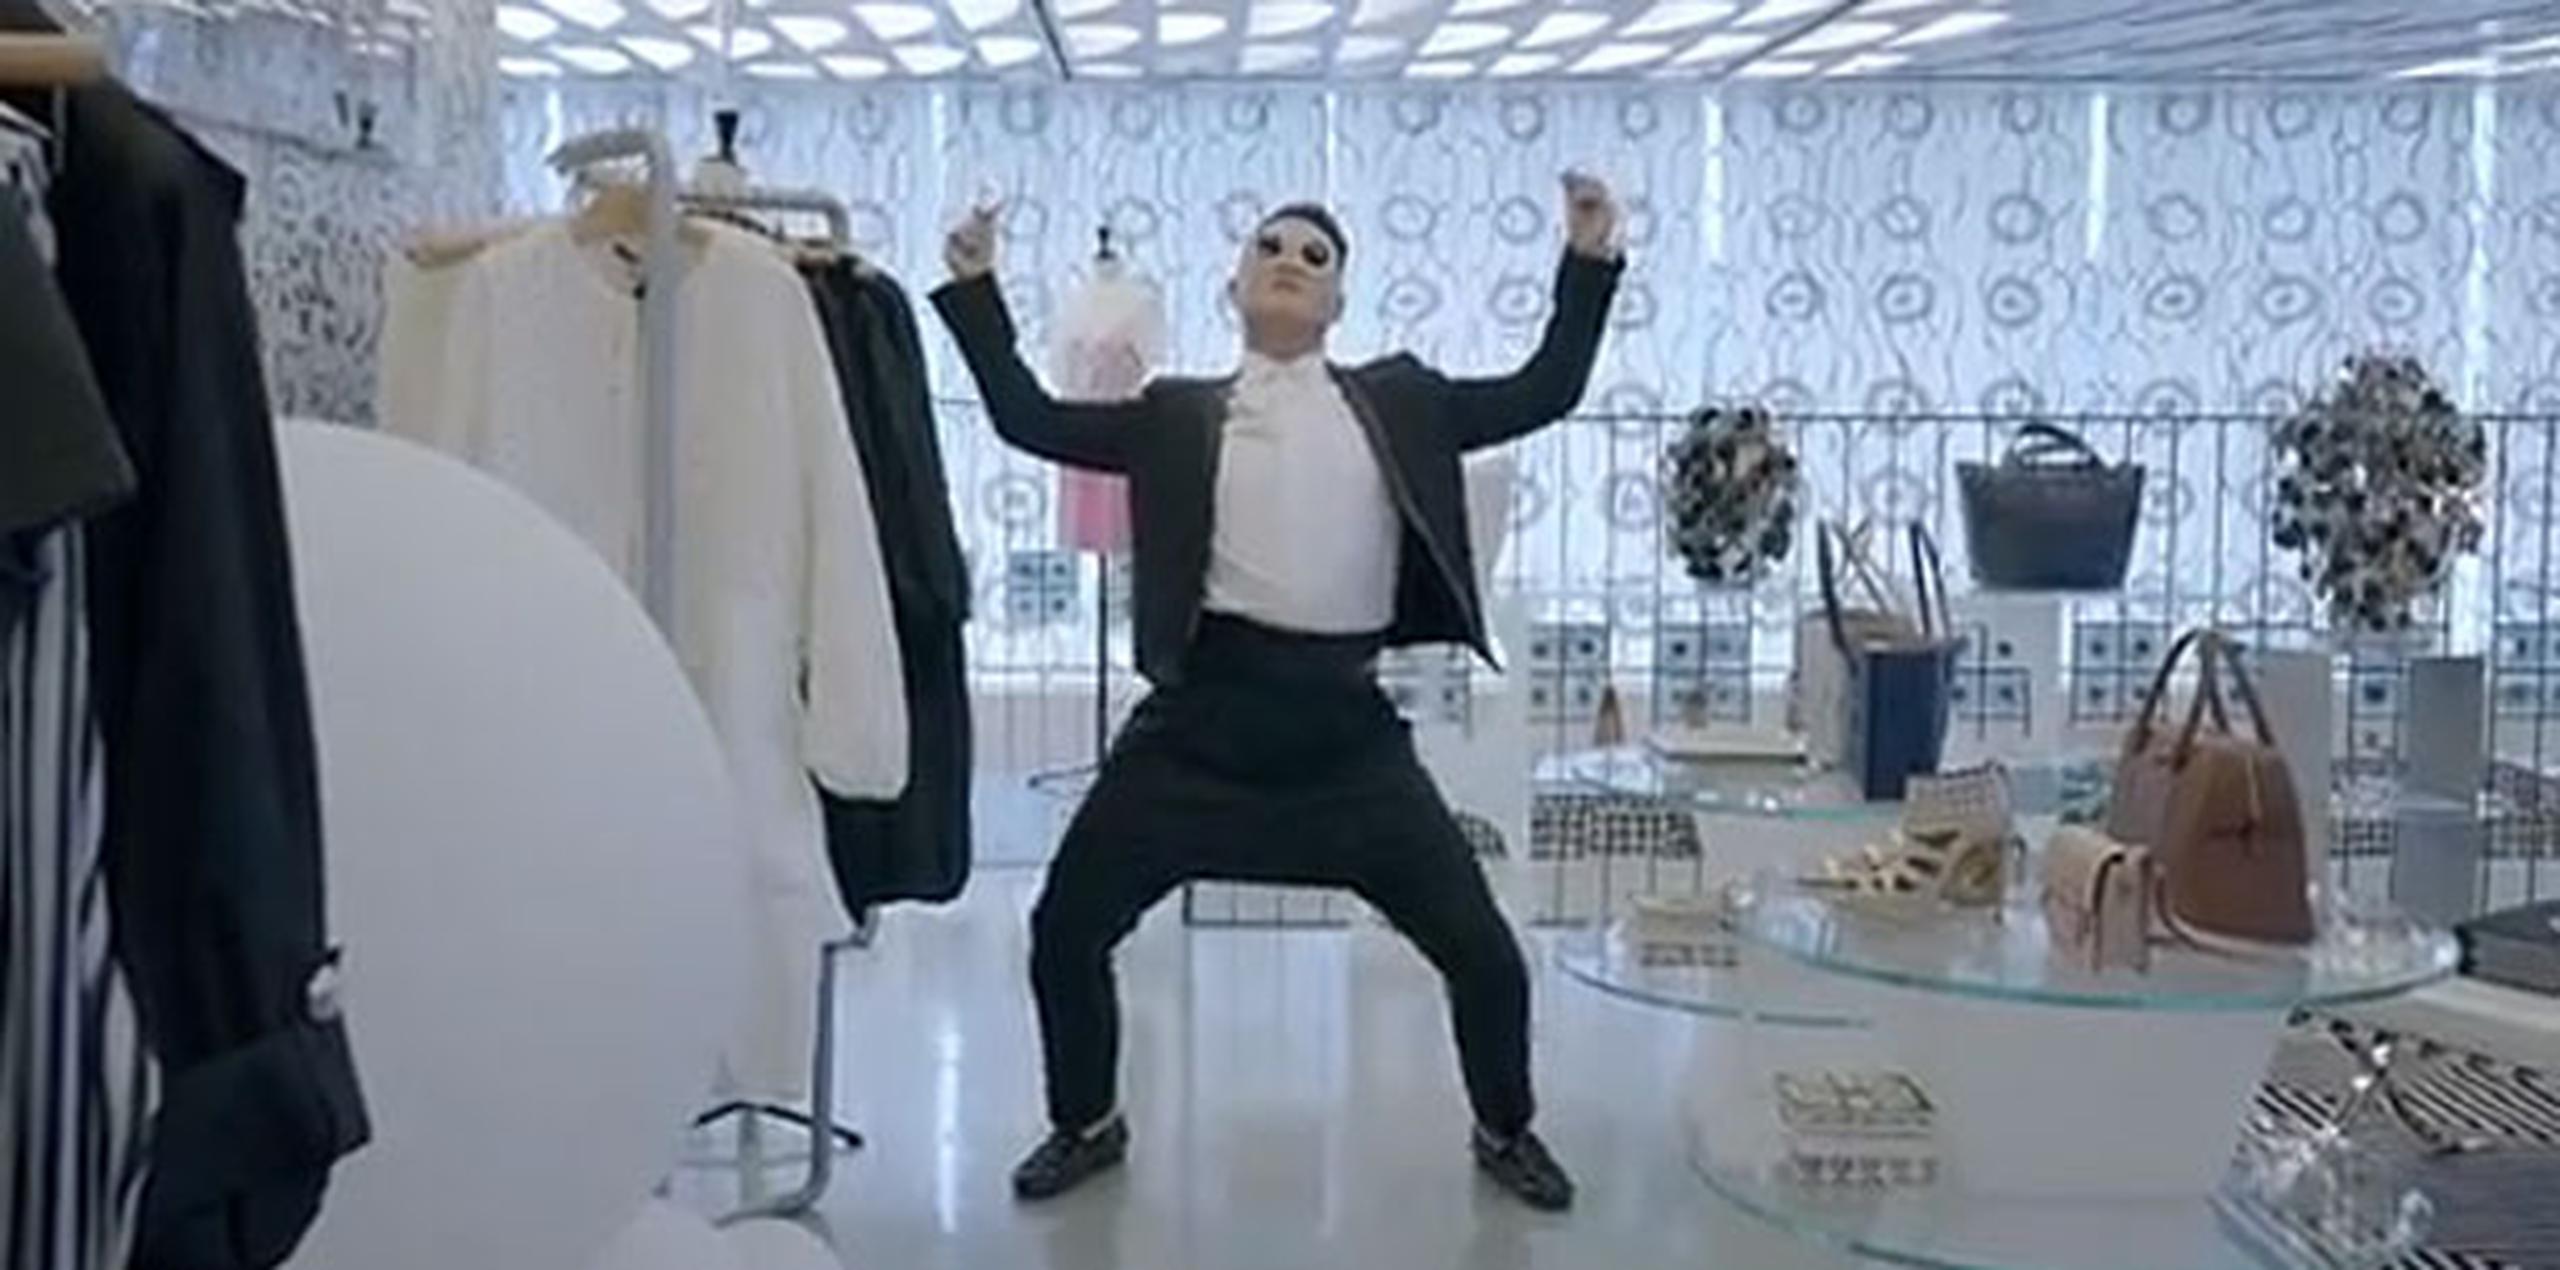 Psy en "Gentleman" (YouTube)